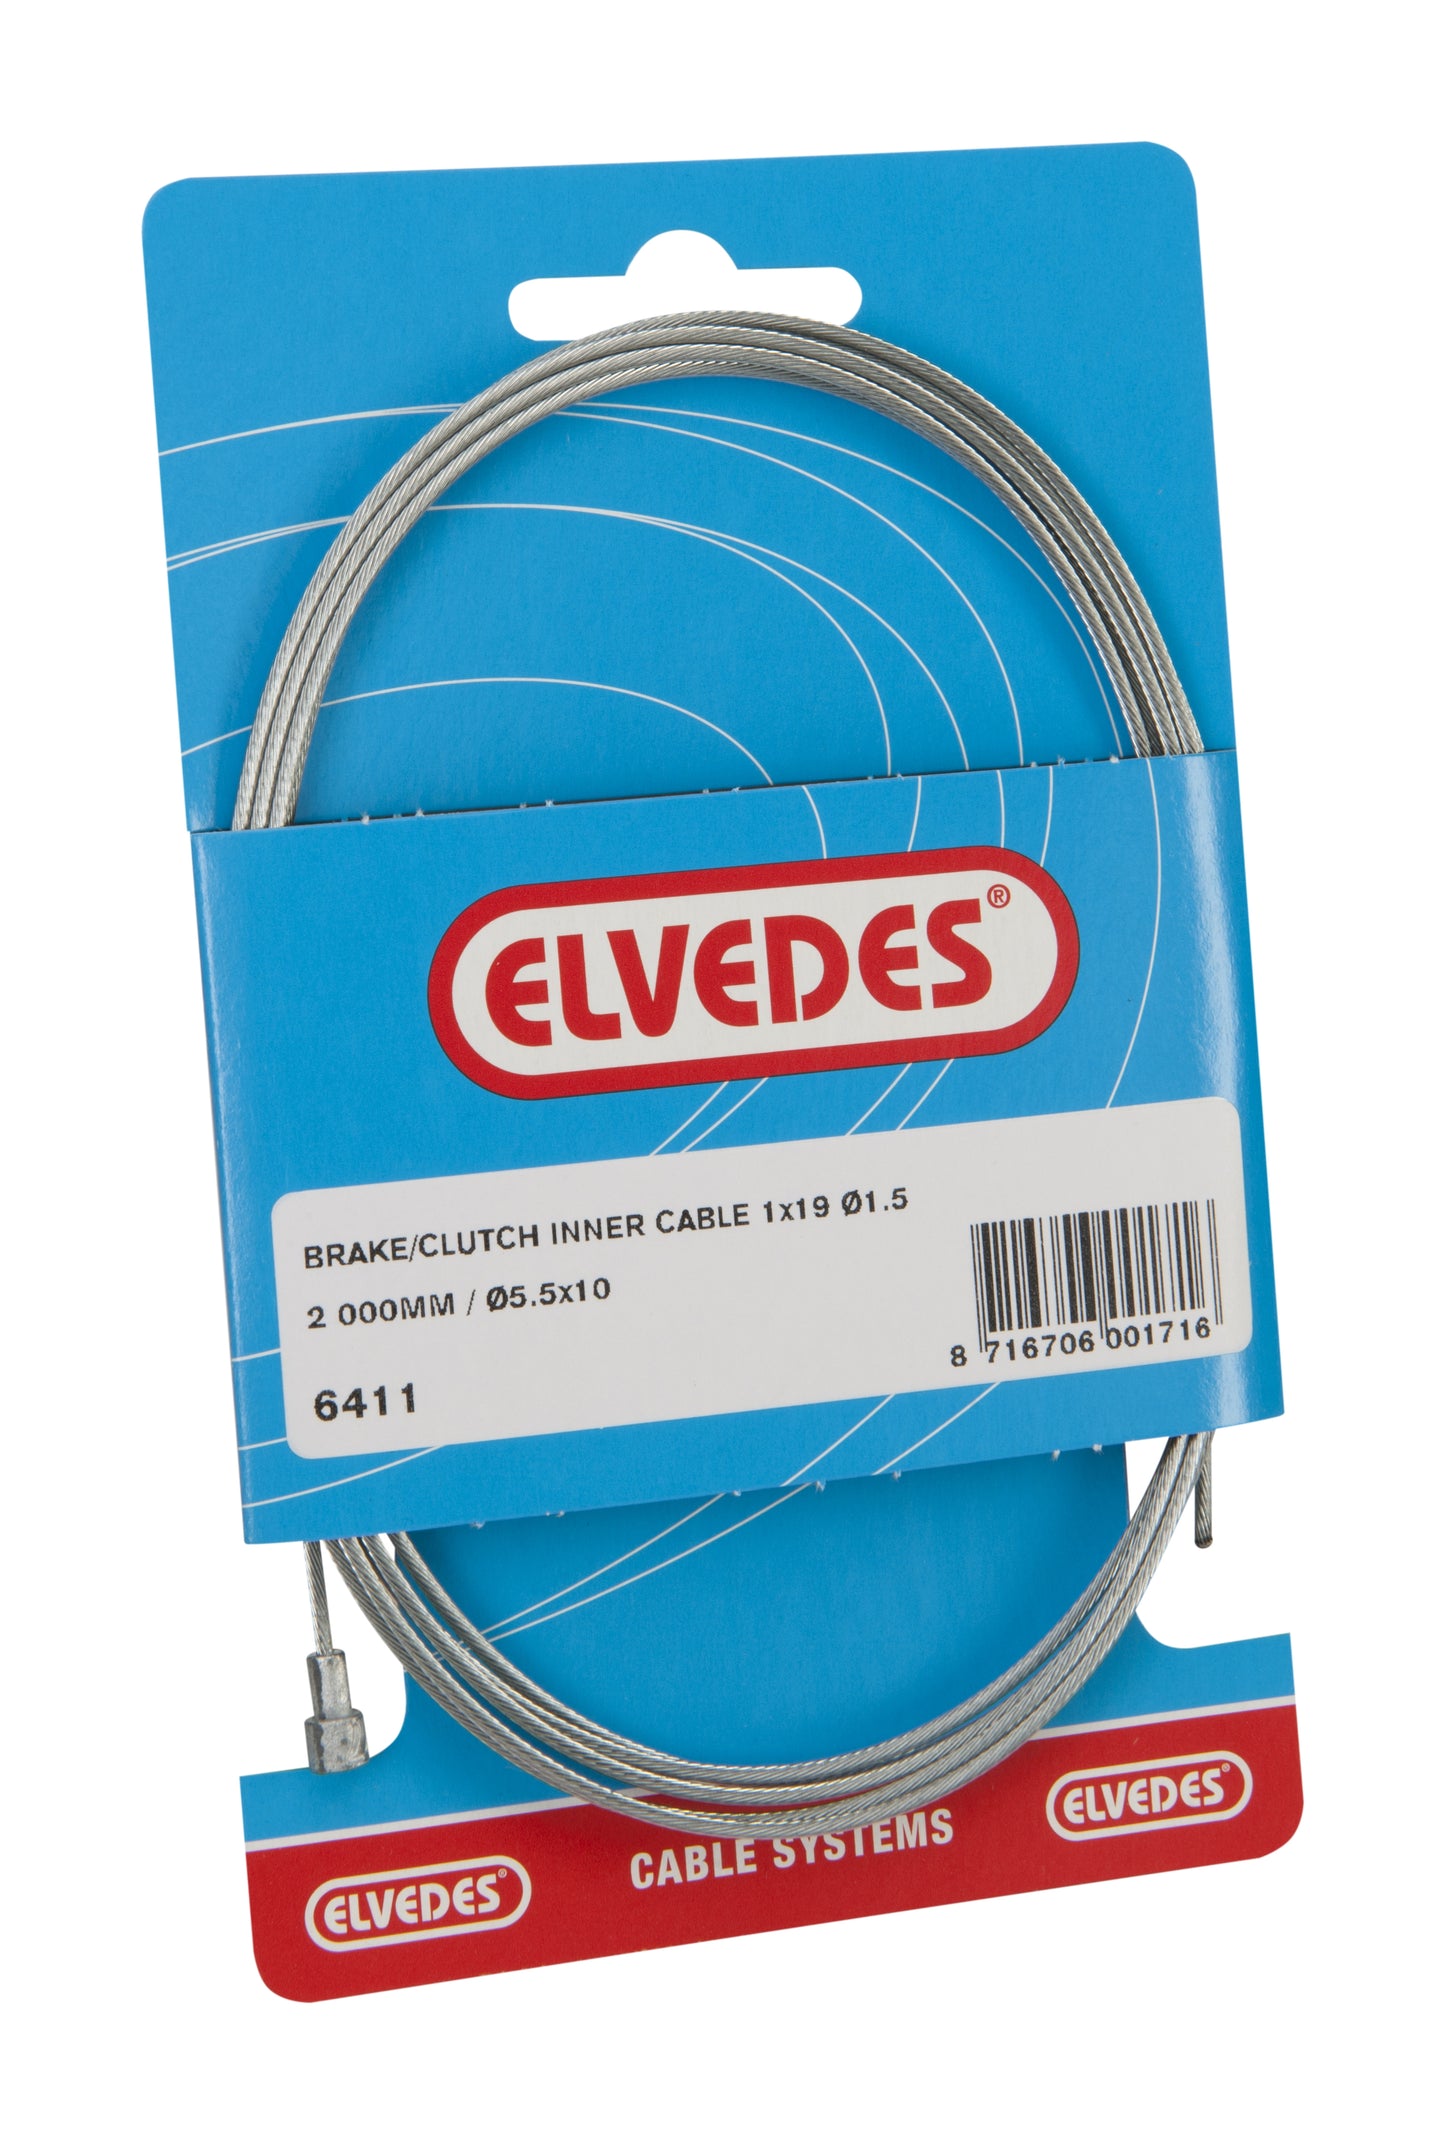 Elvedes embrague cable interno de 2000 mm 1 × 19 galvanizado Ø1.5 mm con pipa en V (en el mapa)